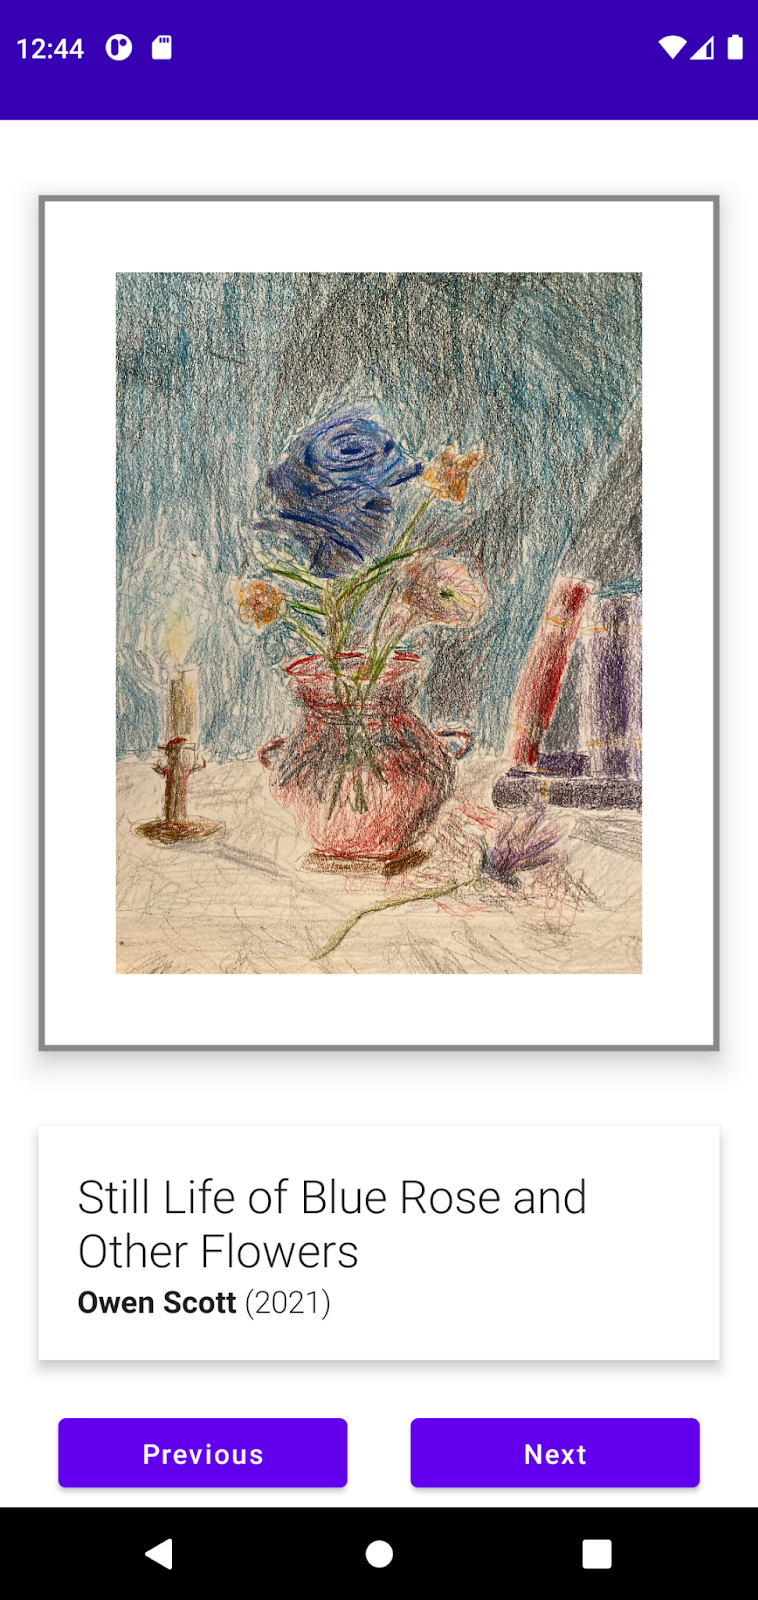 오웬 스콧의 Still Life of Blue Rose and Other Flowers를 보여주는 Art Space 앱의 예